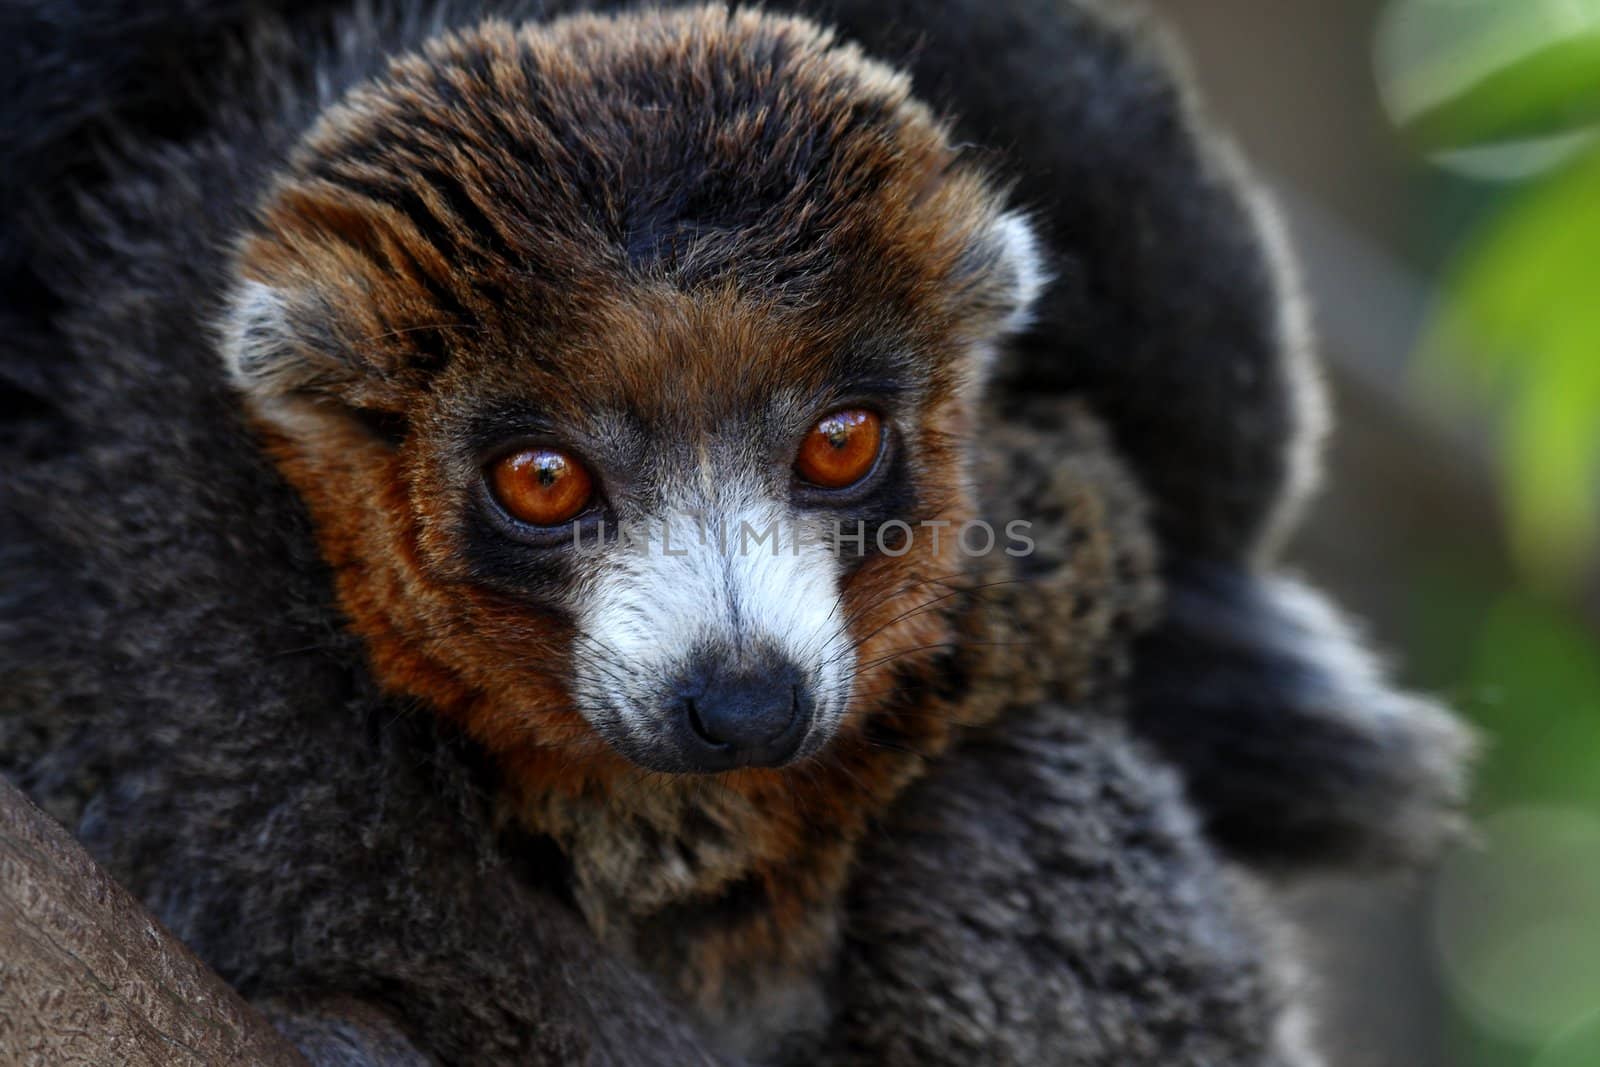 Portrait of a black and brown lemur